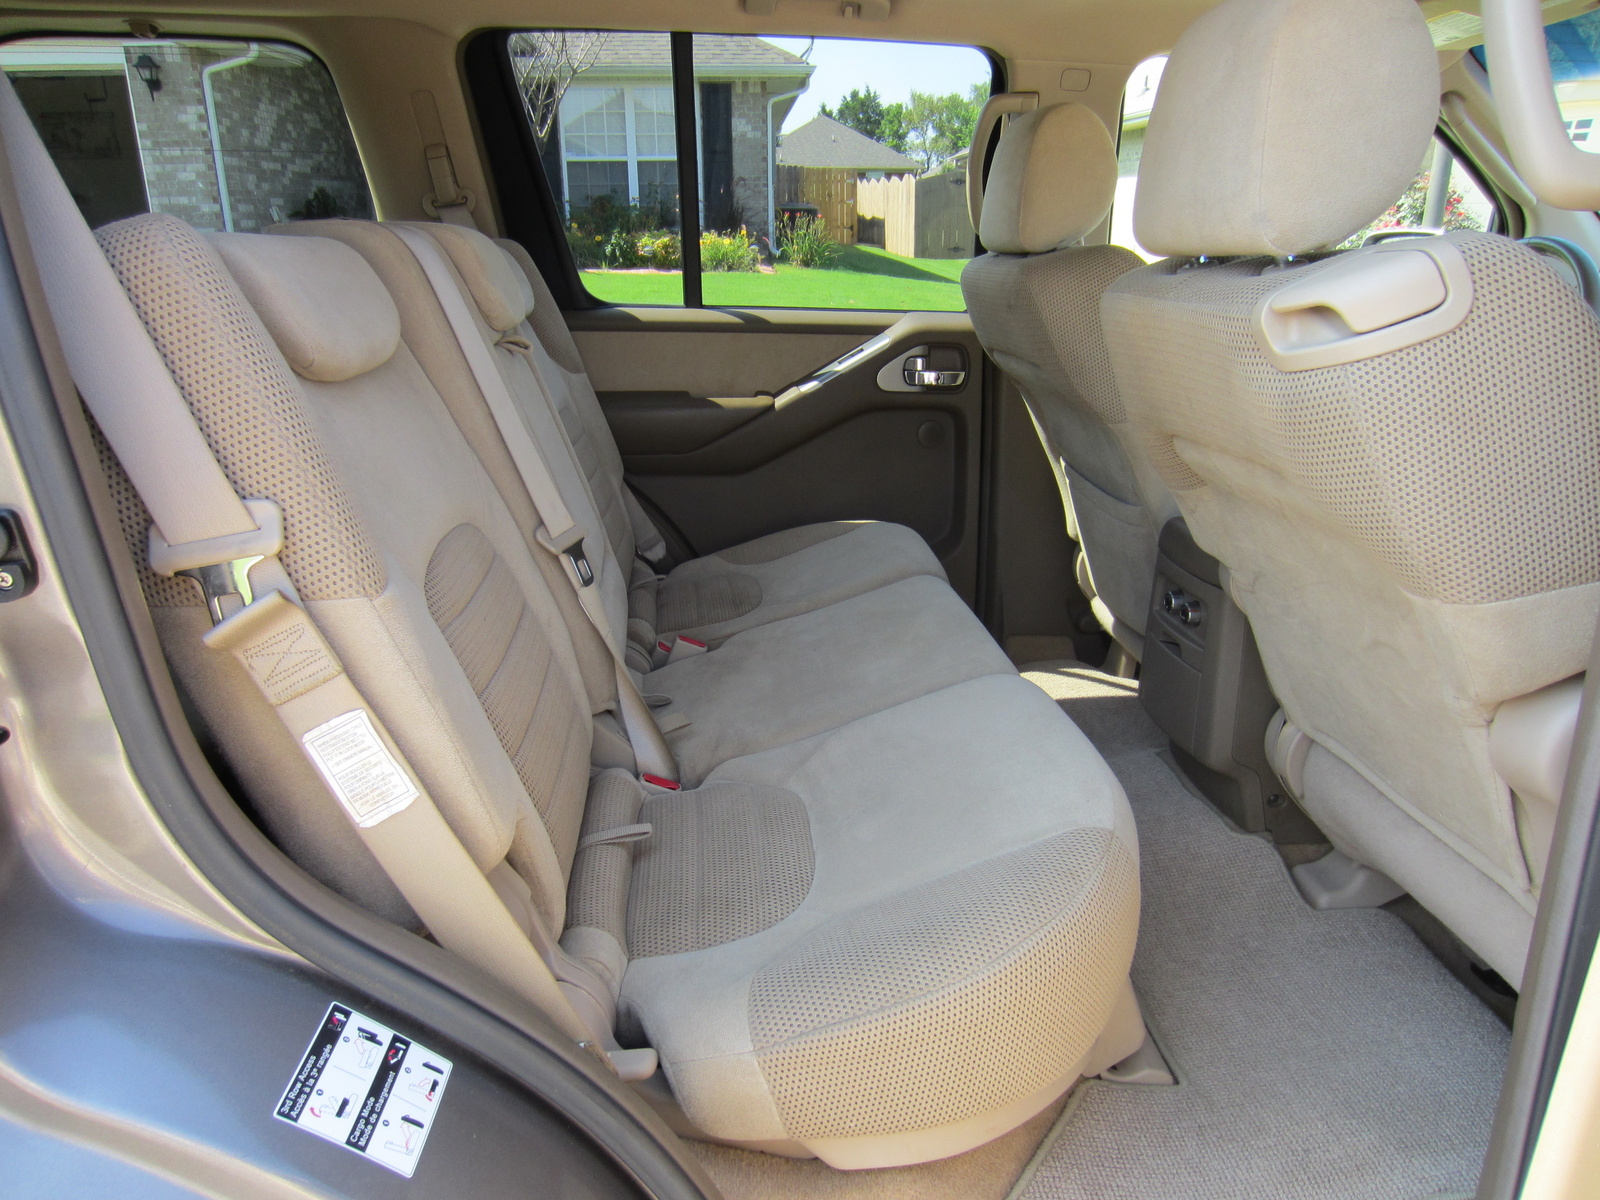 2005 Nissan pathfinder se interior #2